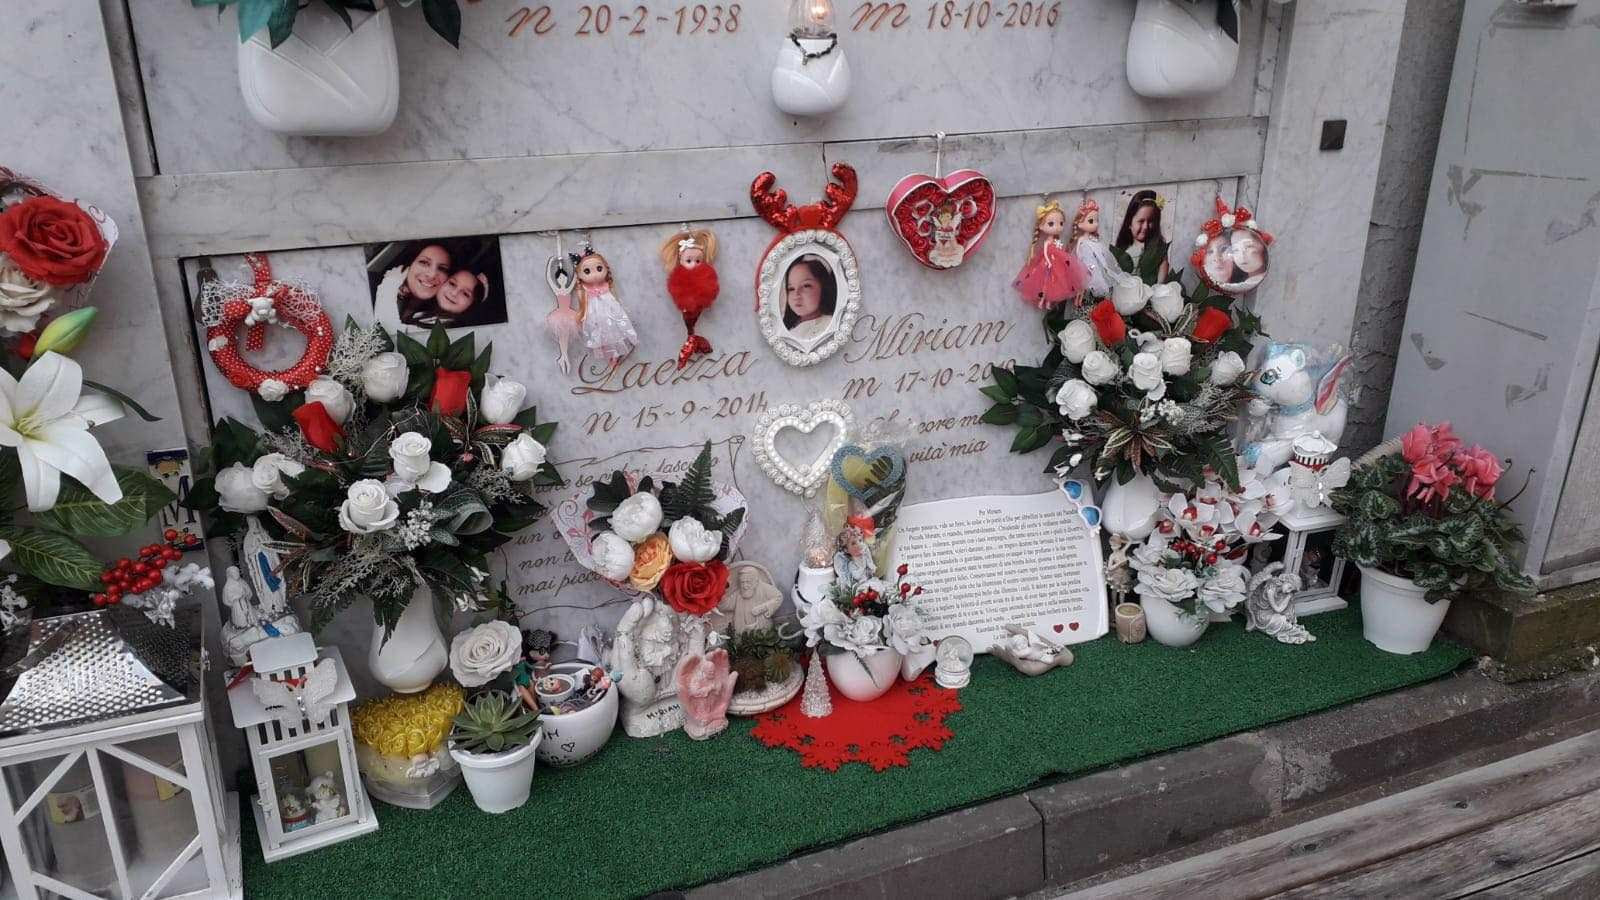 Crispano, rubate le bambole dalla tomba di Miriam, la bambina morta a 5 anni per un malore nel 2019